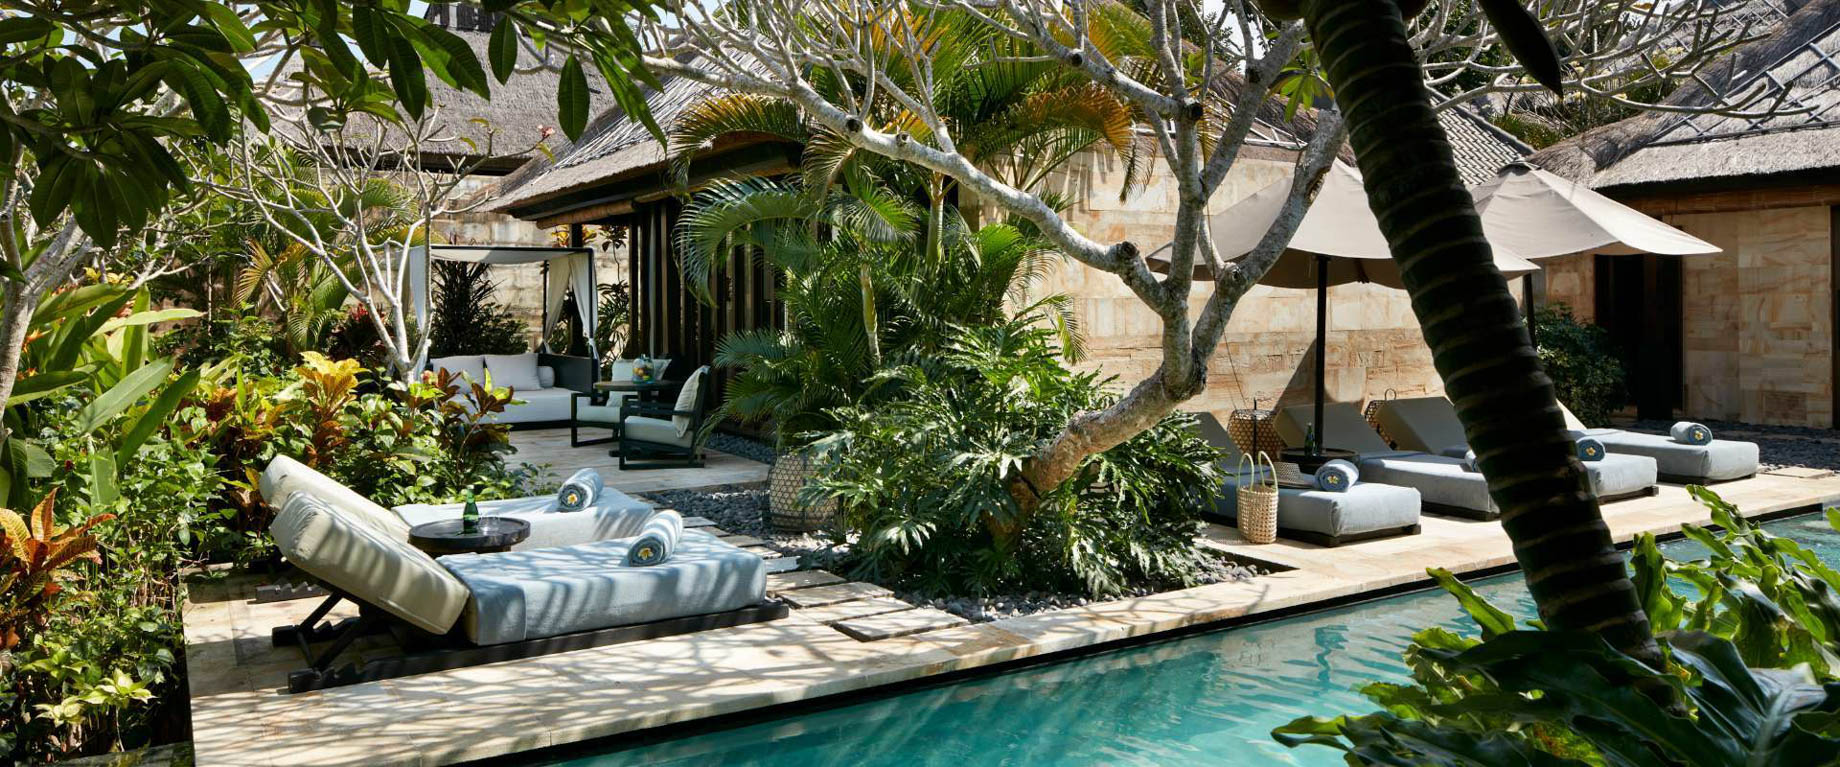 Bvlgari Resort Bali – Uluwatu, Bali, Indonesia – Ocean View Villa Pool Deck